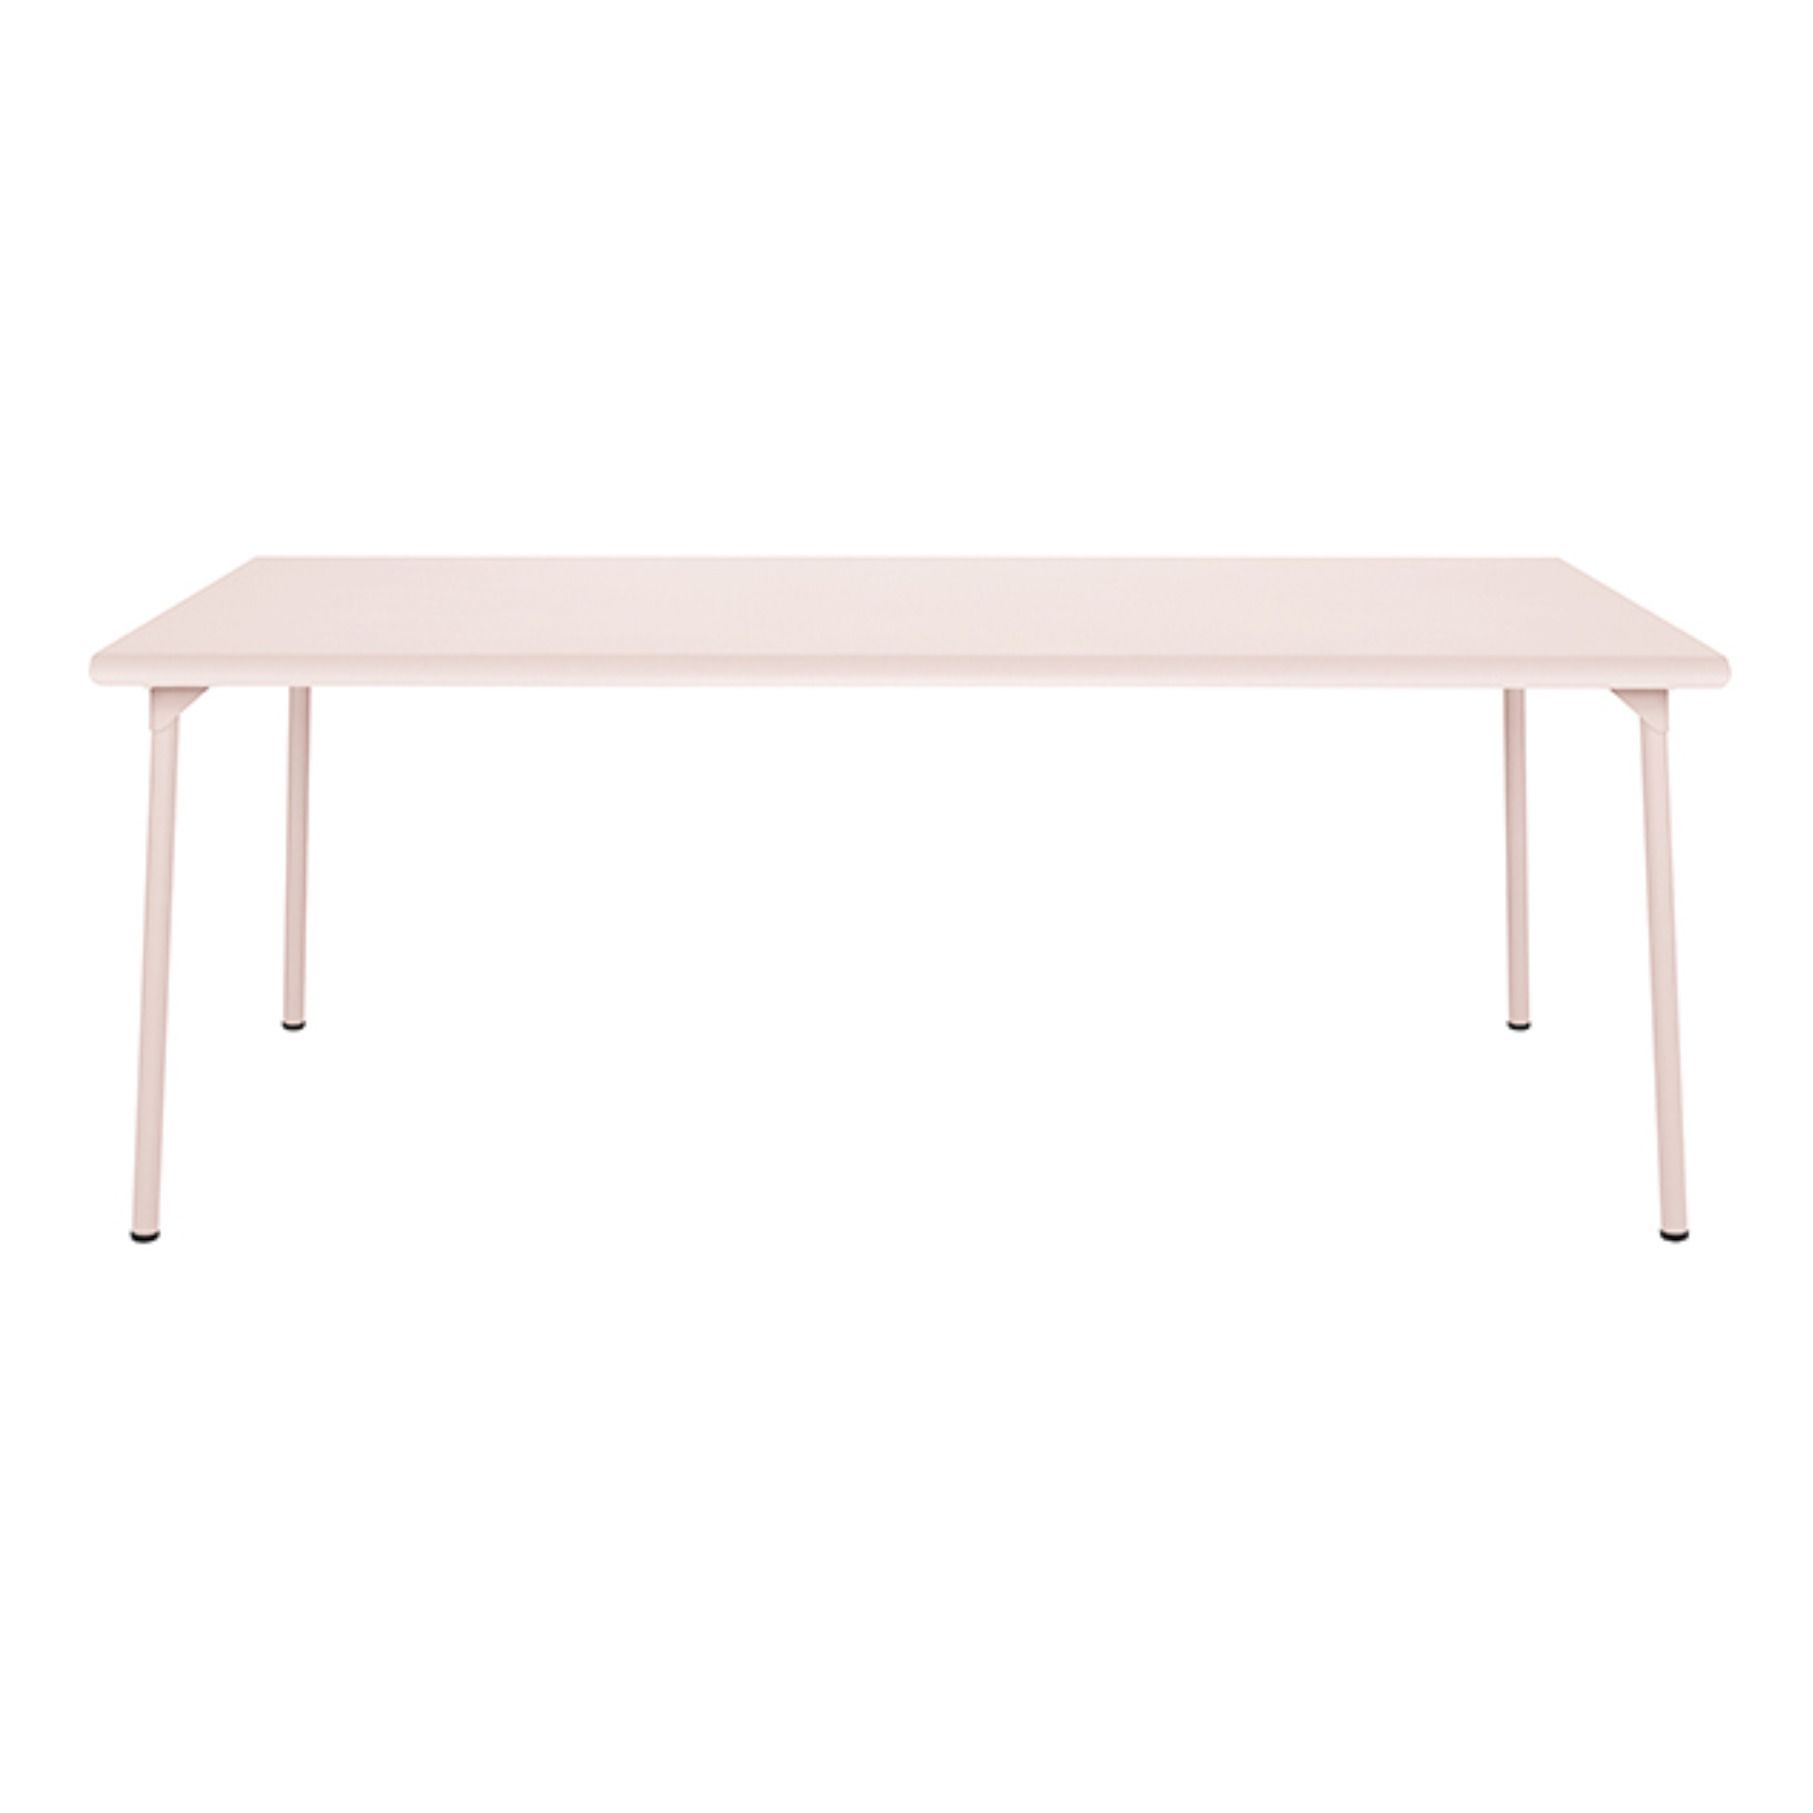 Tolix - Table outdoor Patio en inox - 240x100 cm - Rose poudré